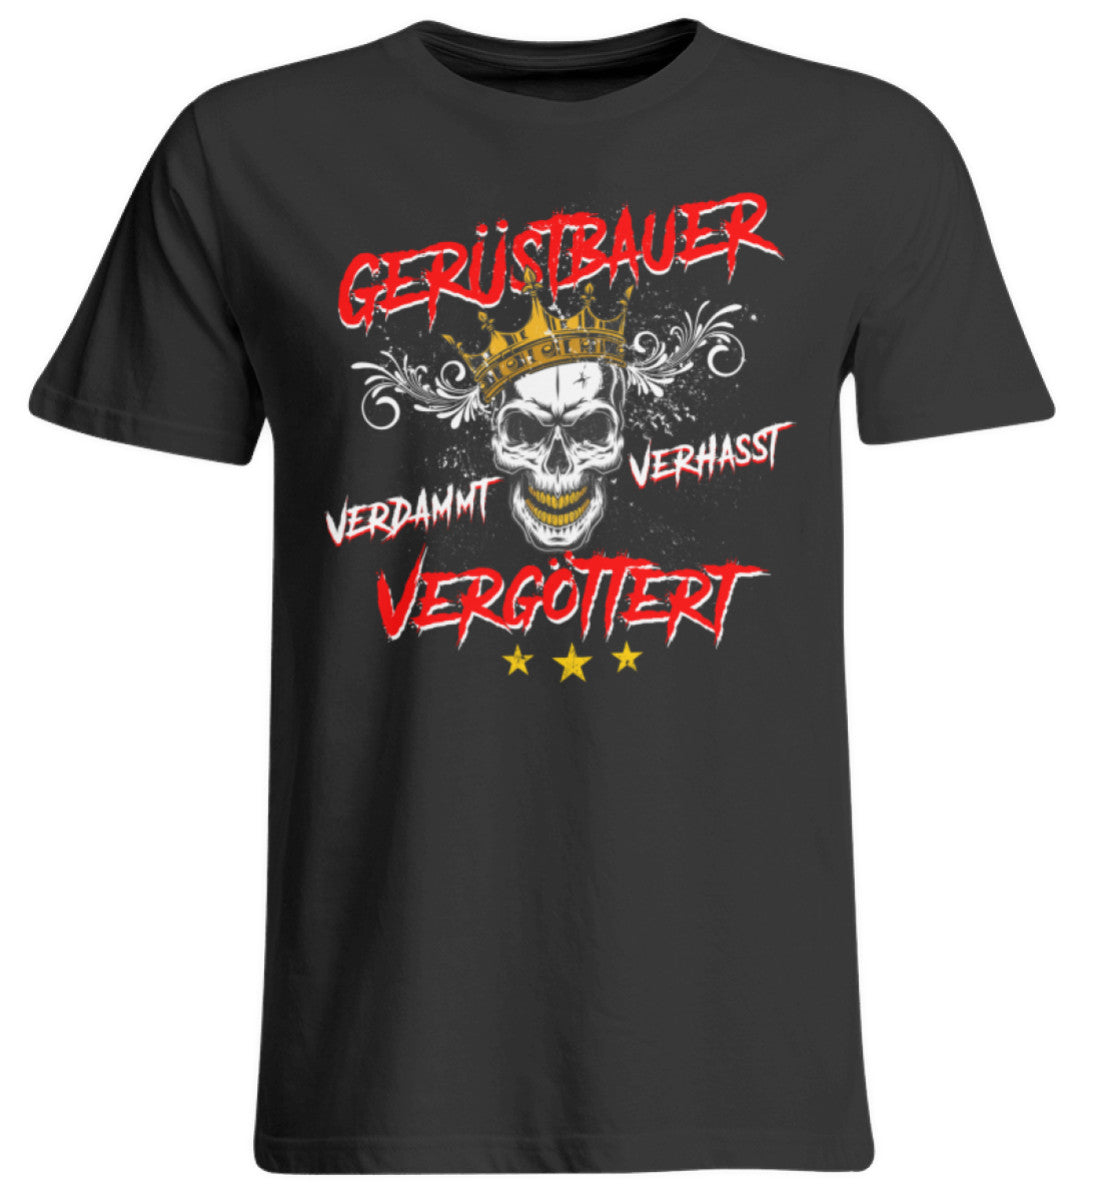 Gerüstbauer / Vergöttert  - Übergrößenshirt €24.95 Gerüstbauer - Shop >>